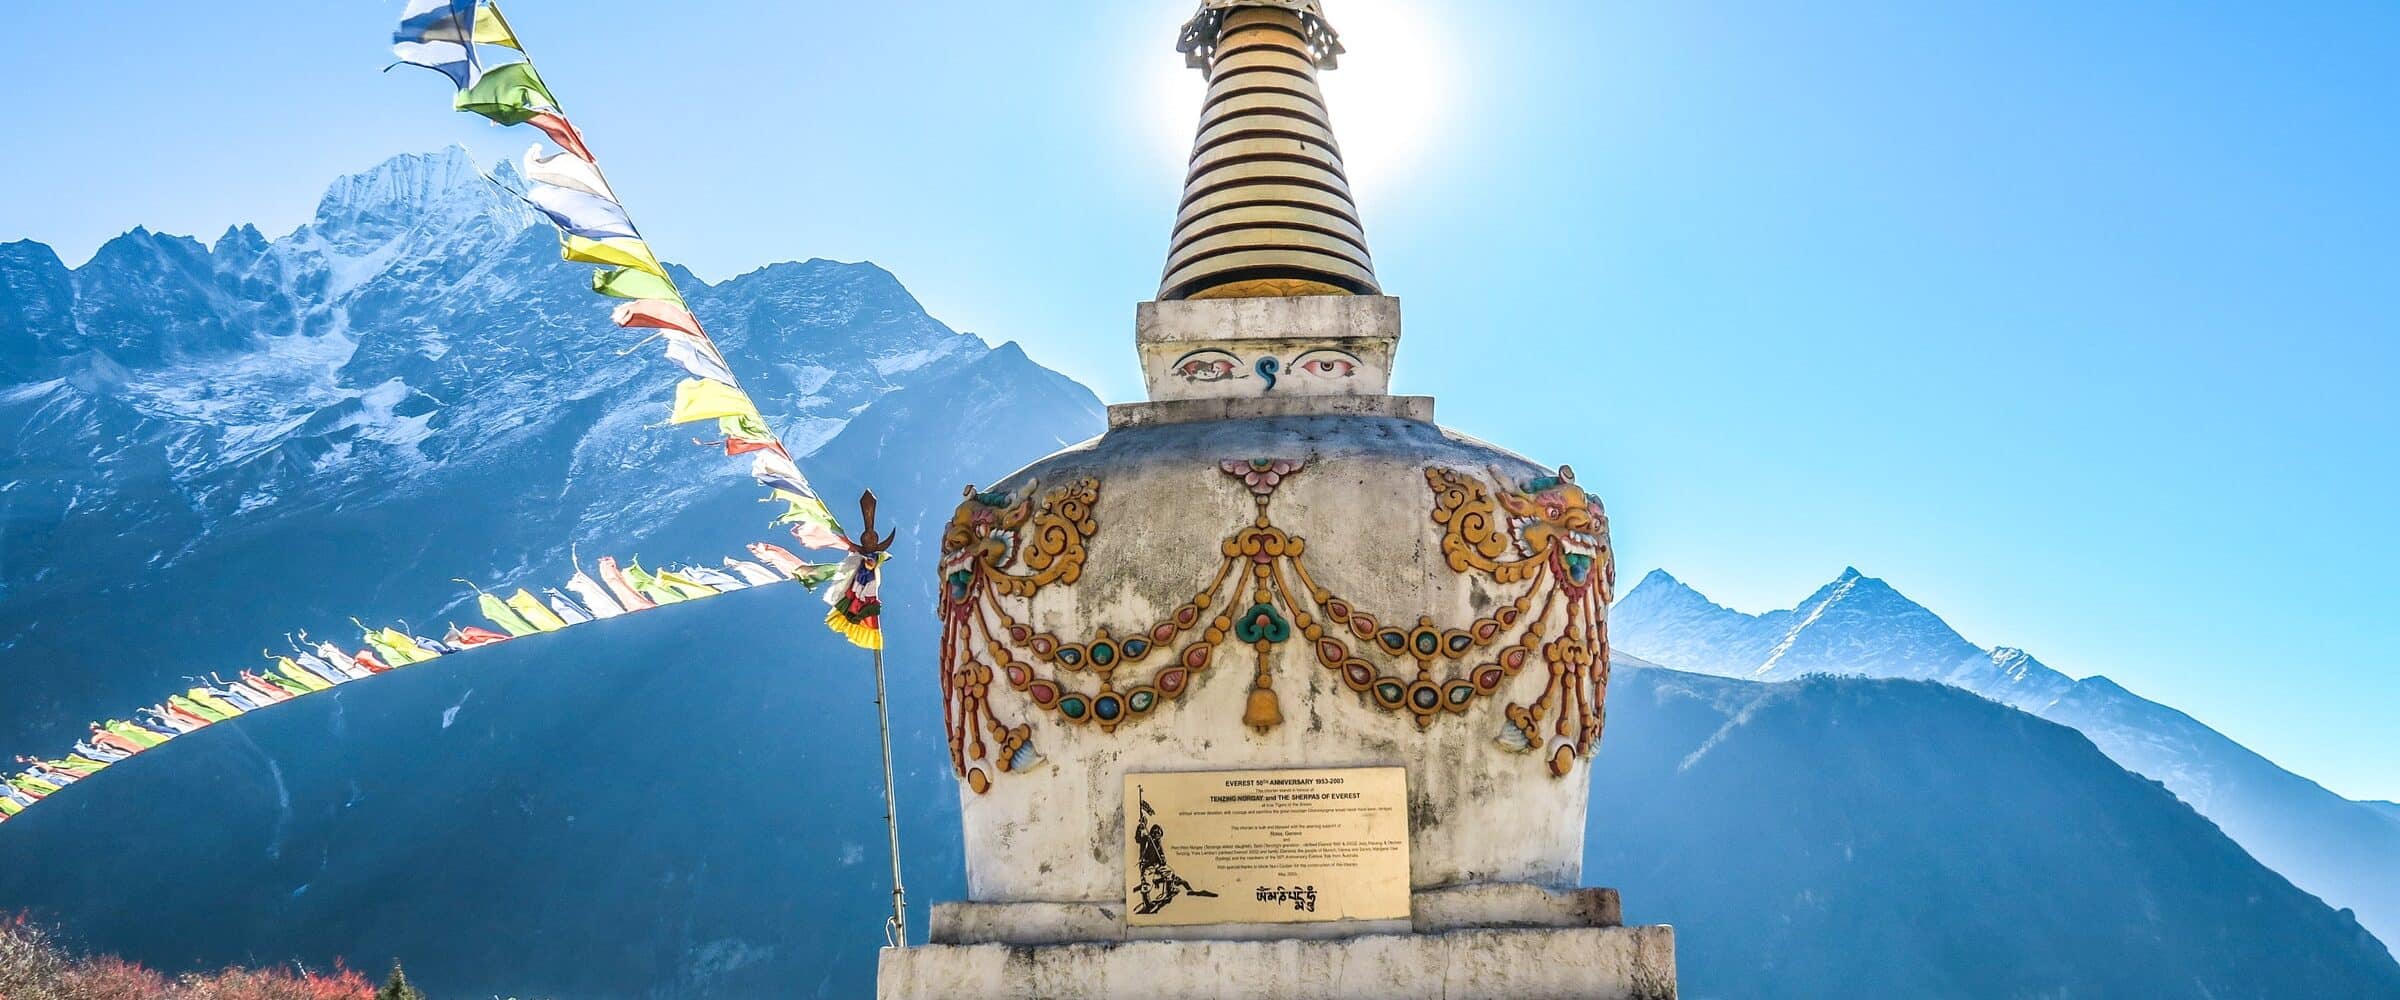 tibete-teto-do-mundo